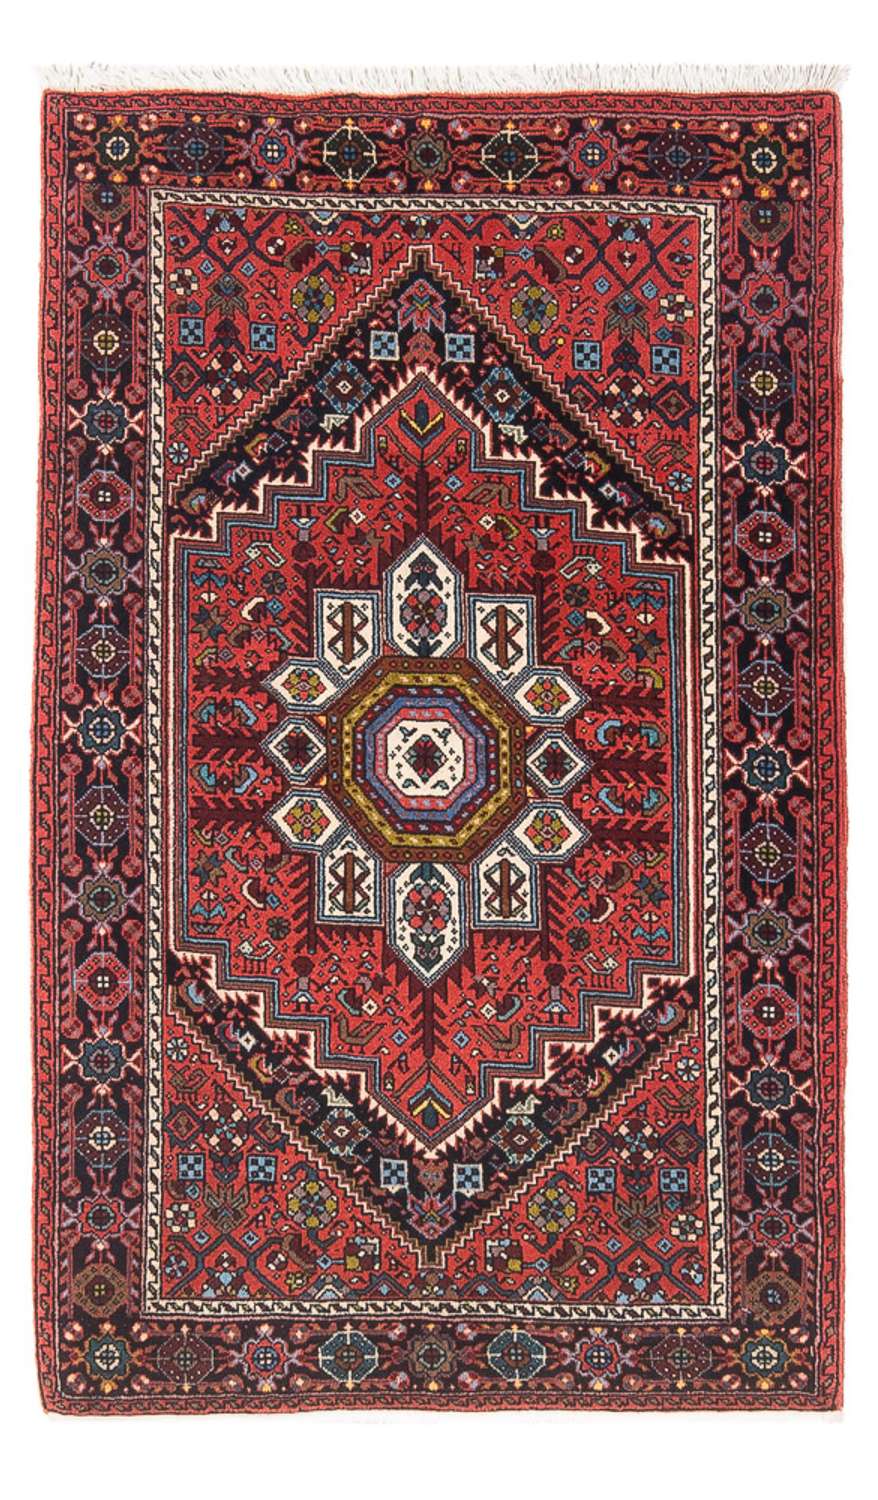 Alfombra persa - Nómada - 129 x 70 cm - rojo